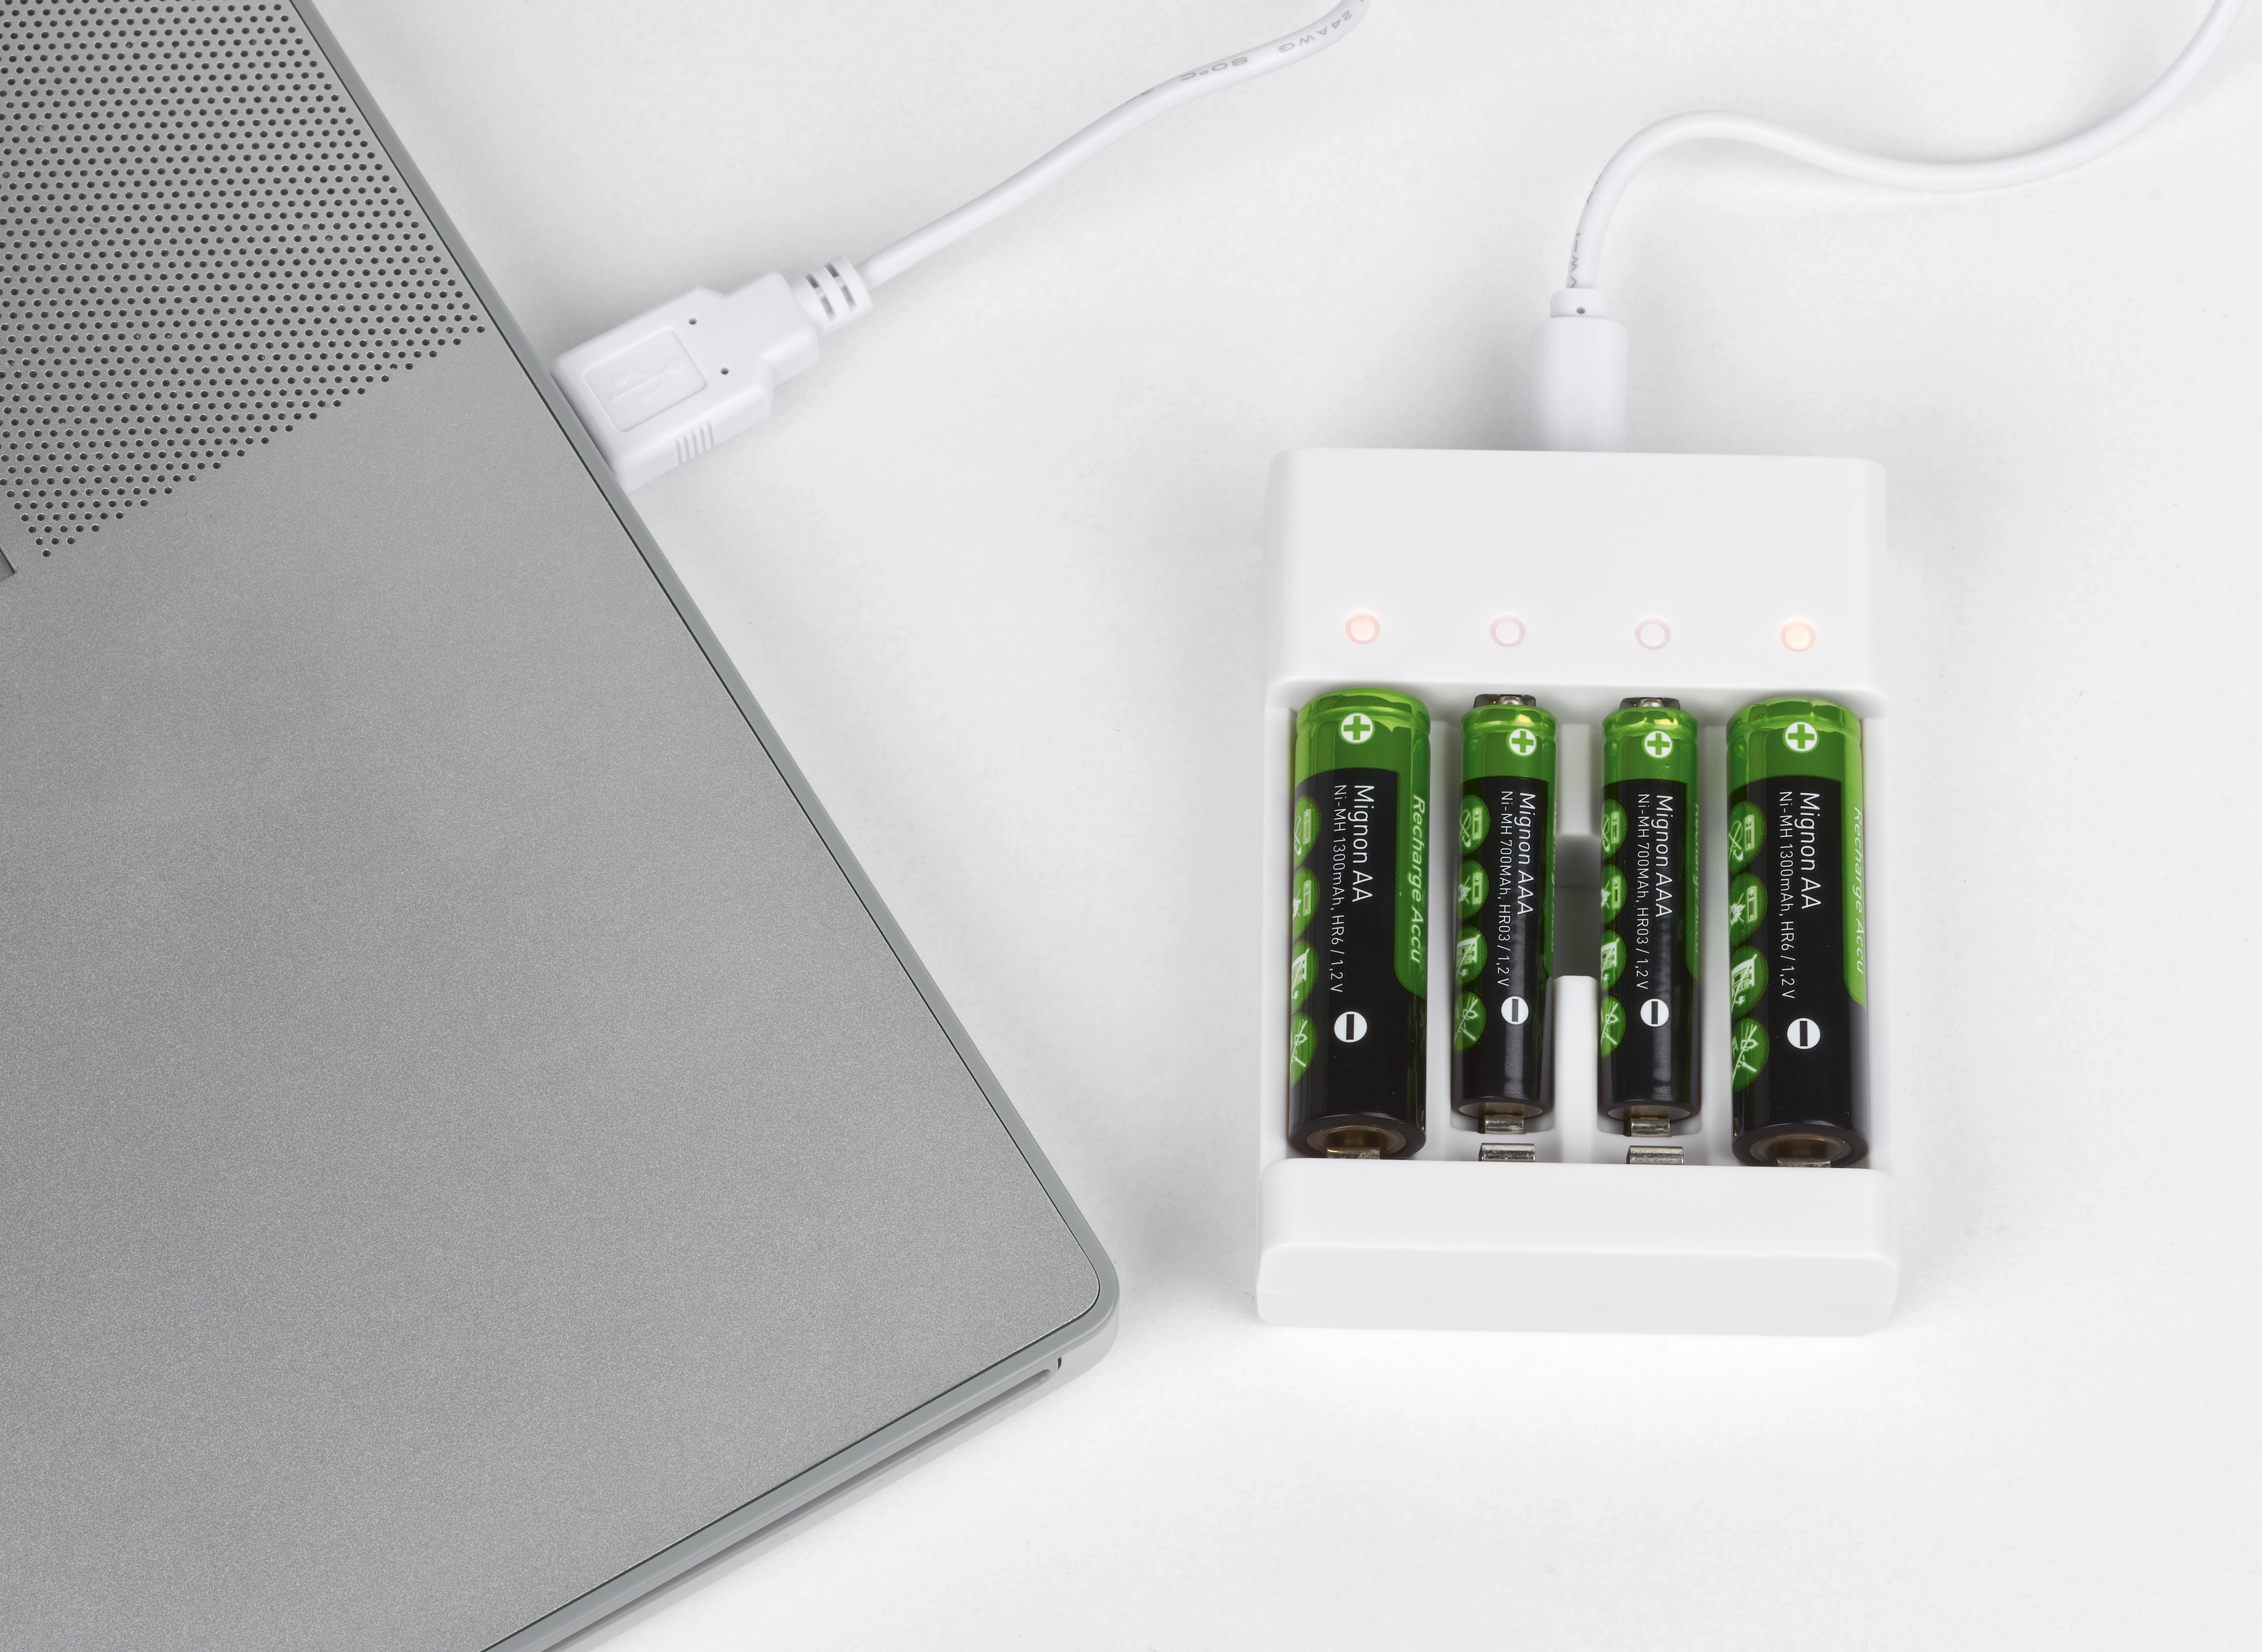 OBI Batterie-Ladegerät 6 A kaufen bei OBI